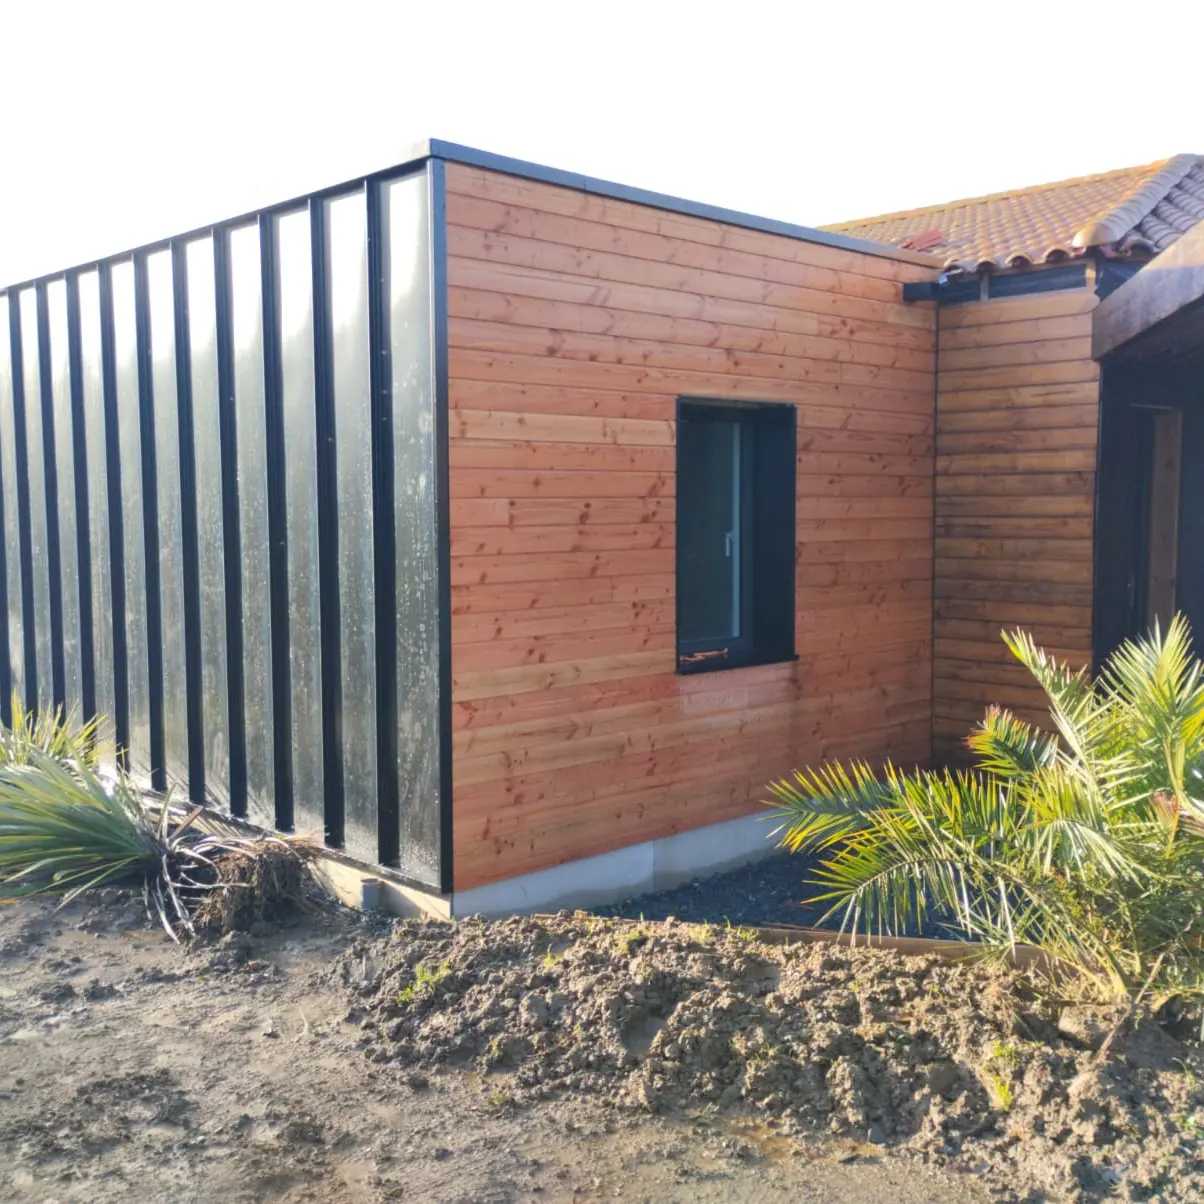 Extension de maison modulaire en bardage imitation zinc et bardage bois.